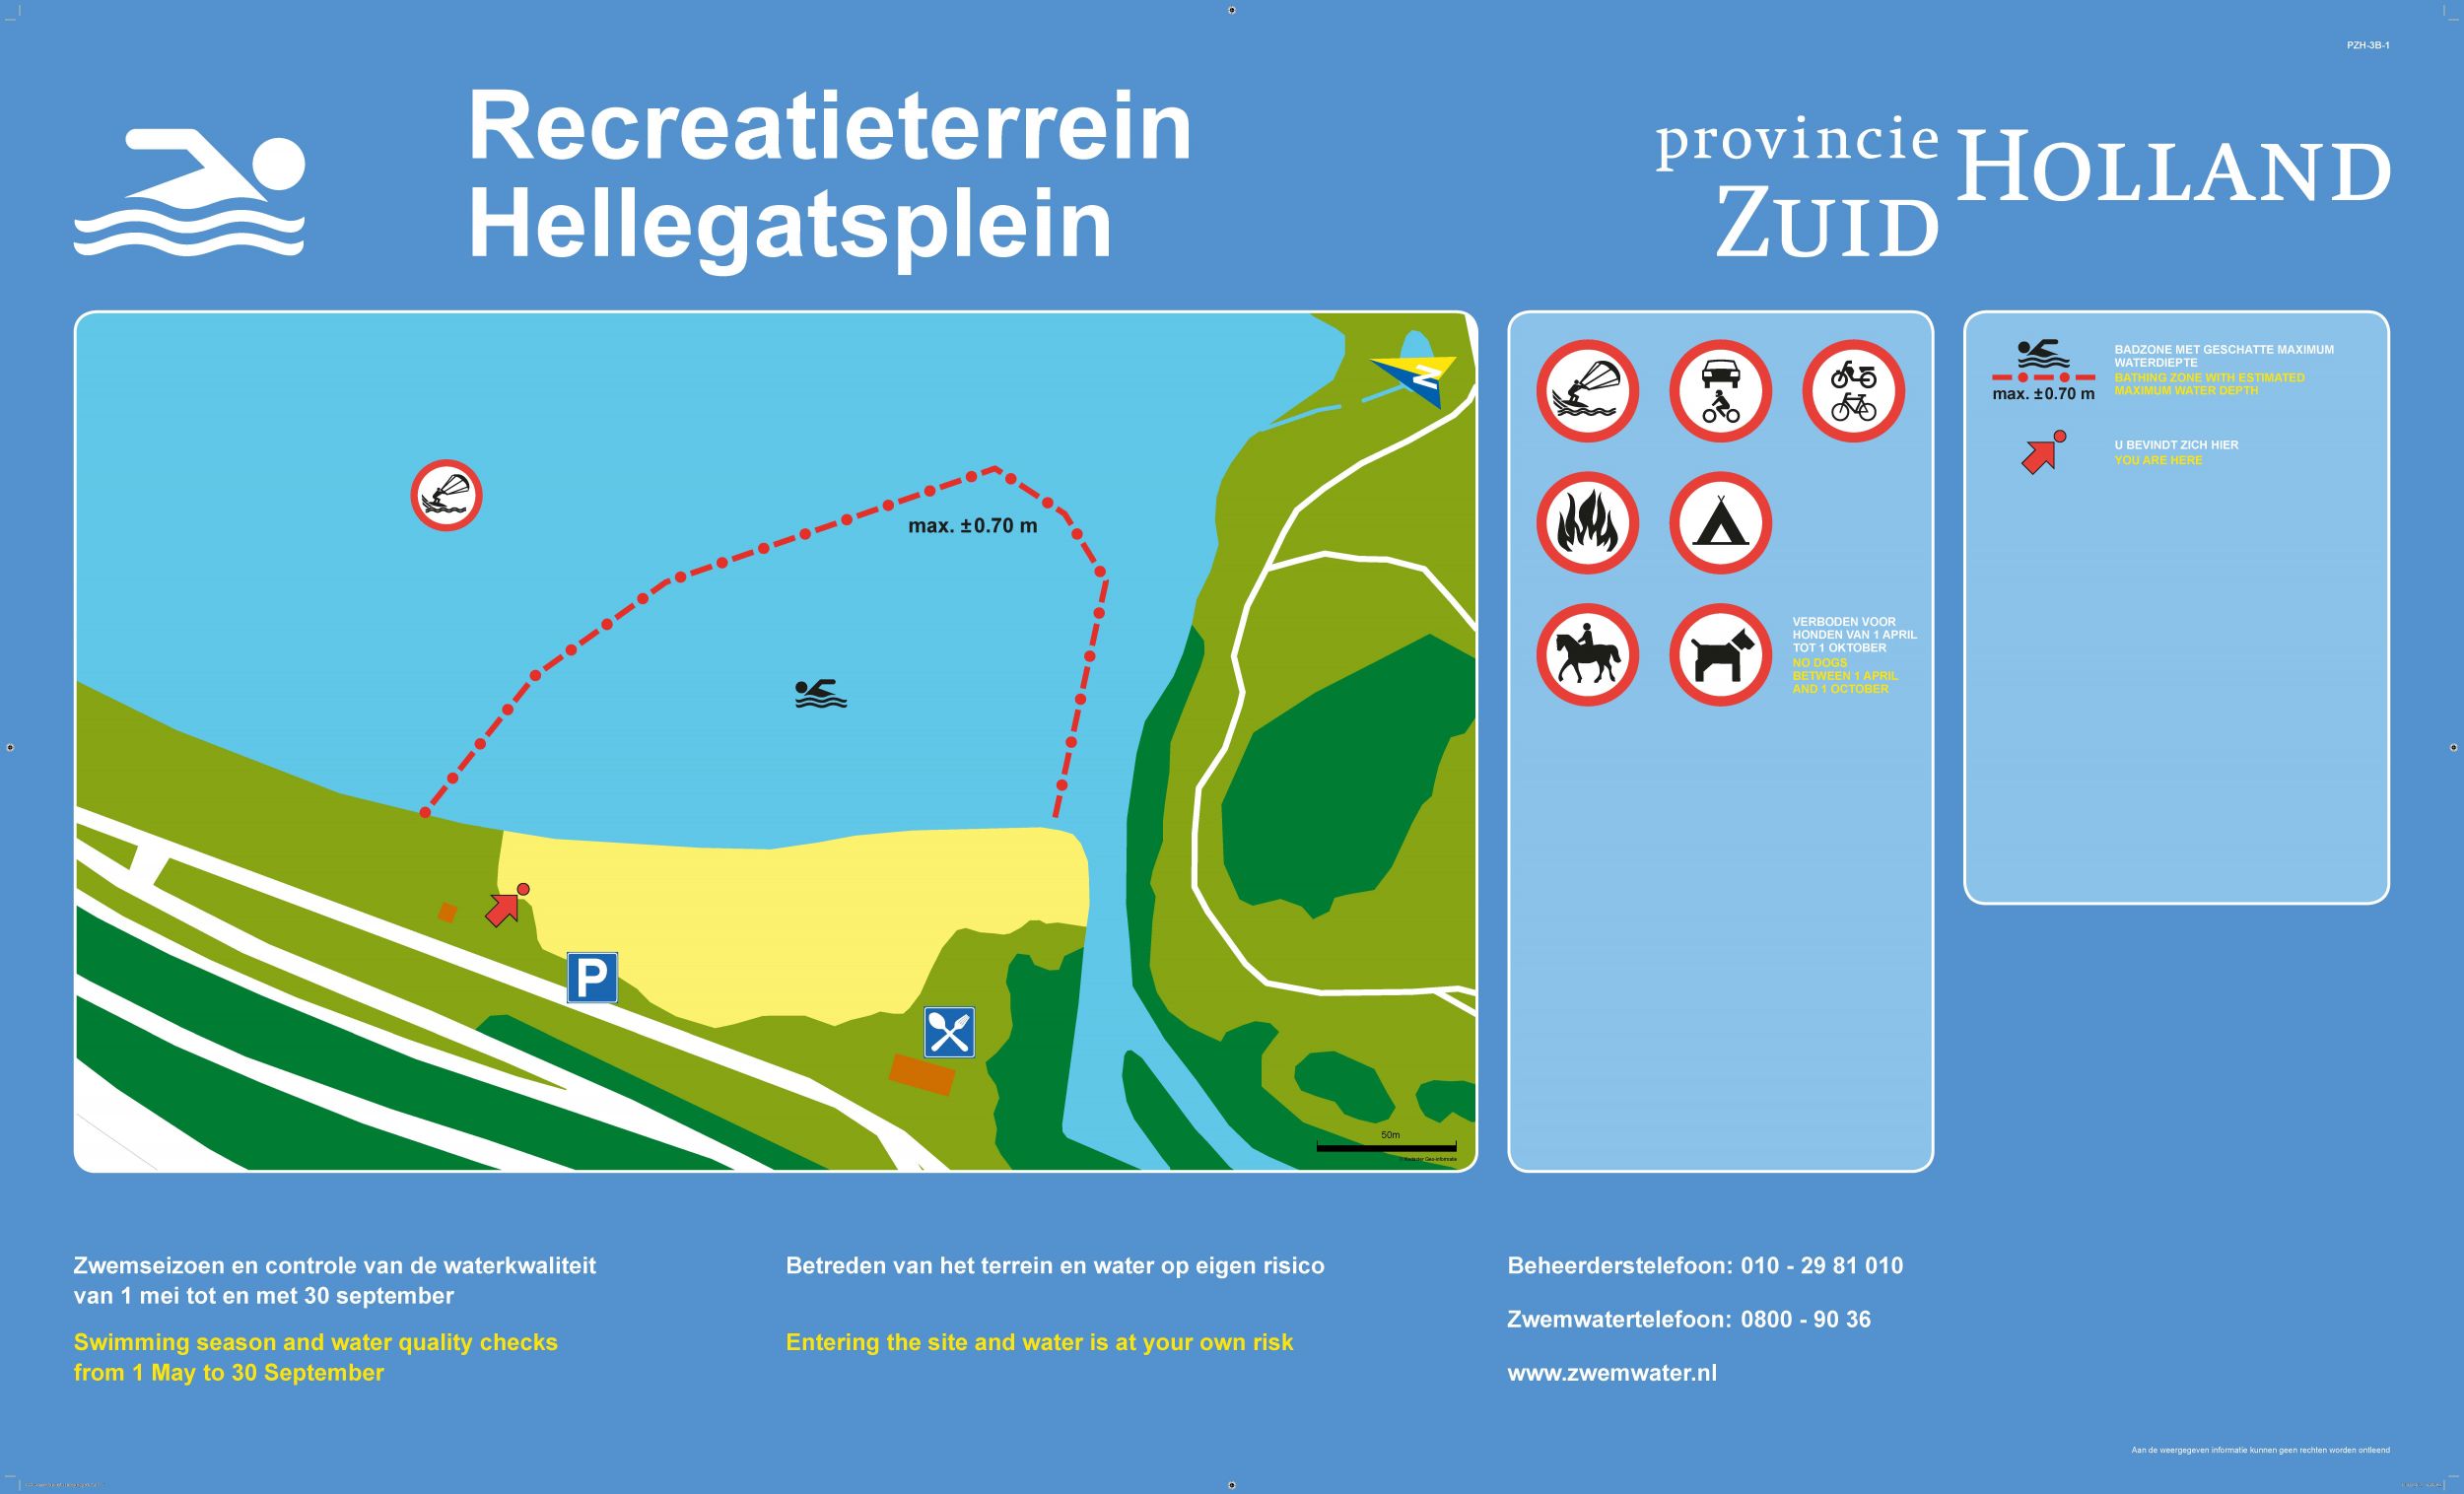 The information board at the swimming location Recreatieterrein Hellegatsplein